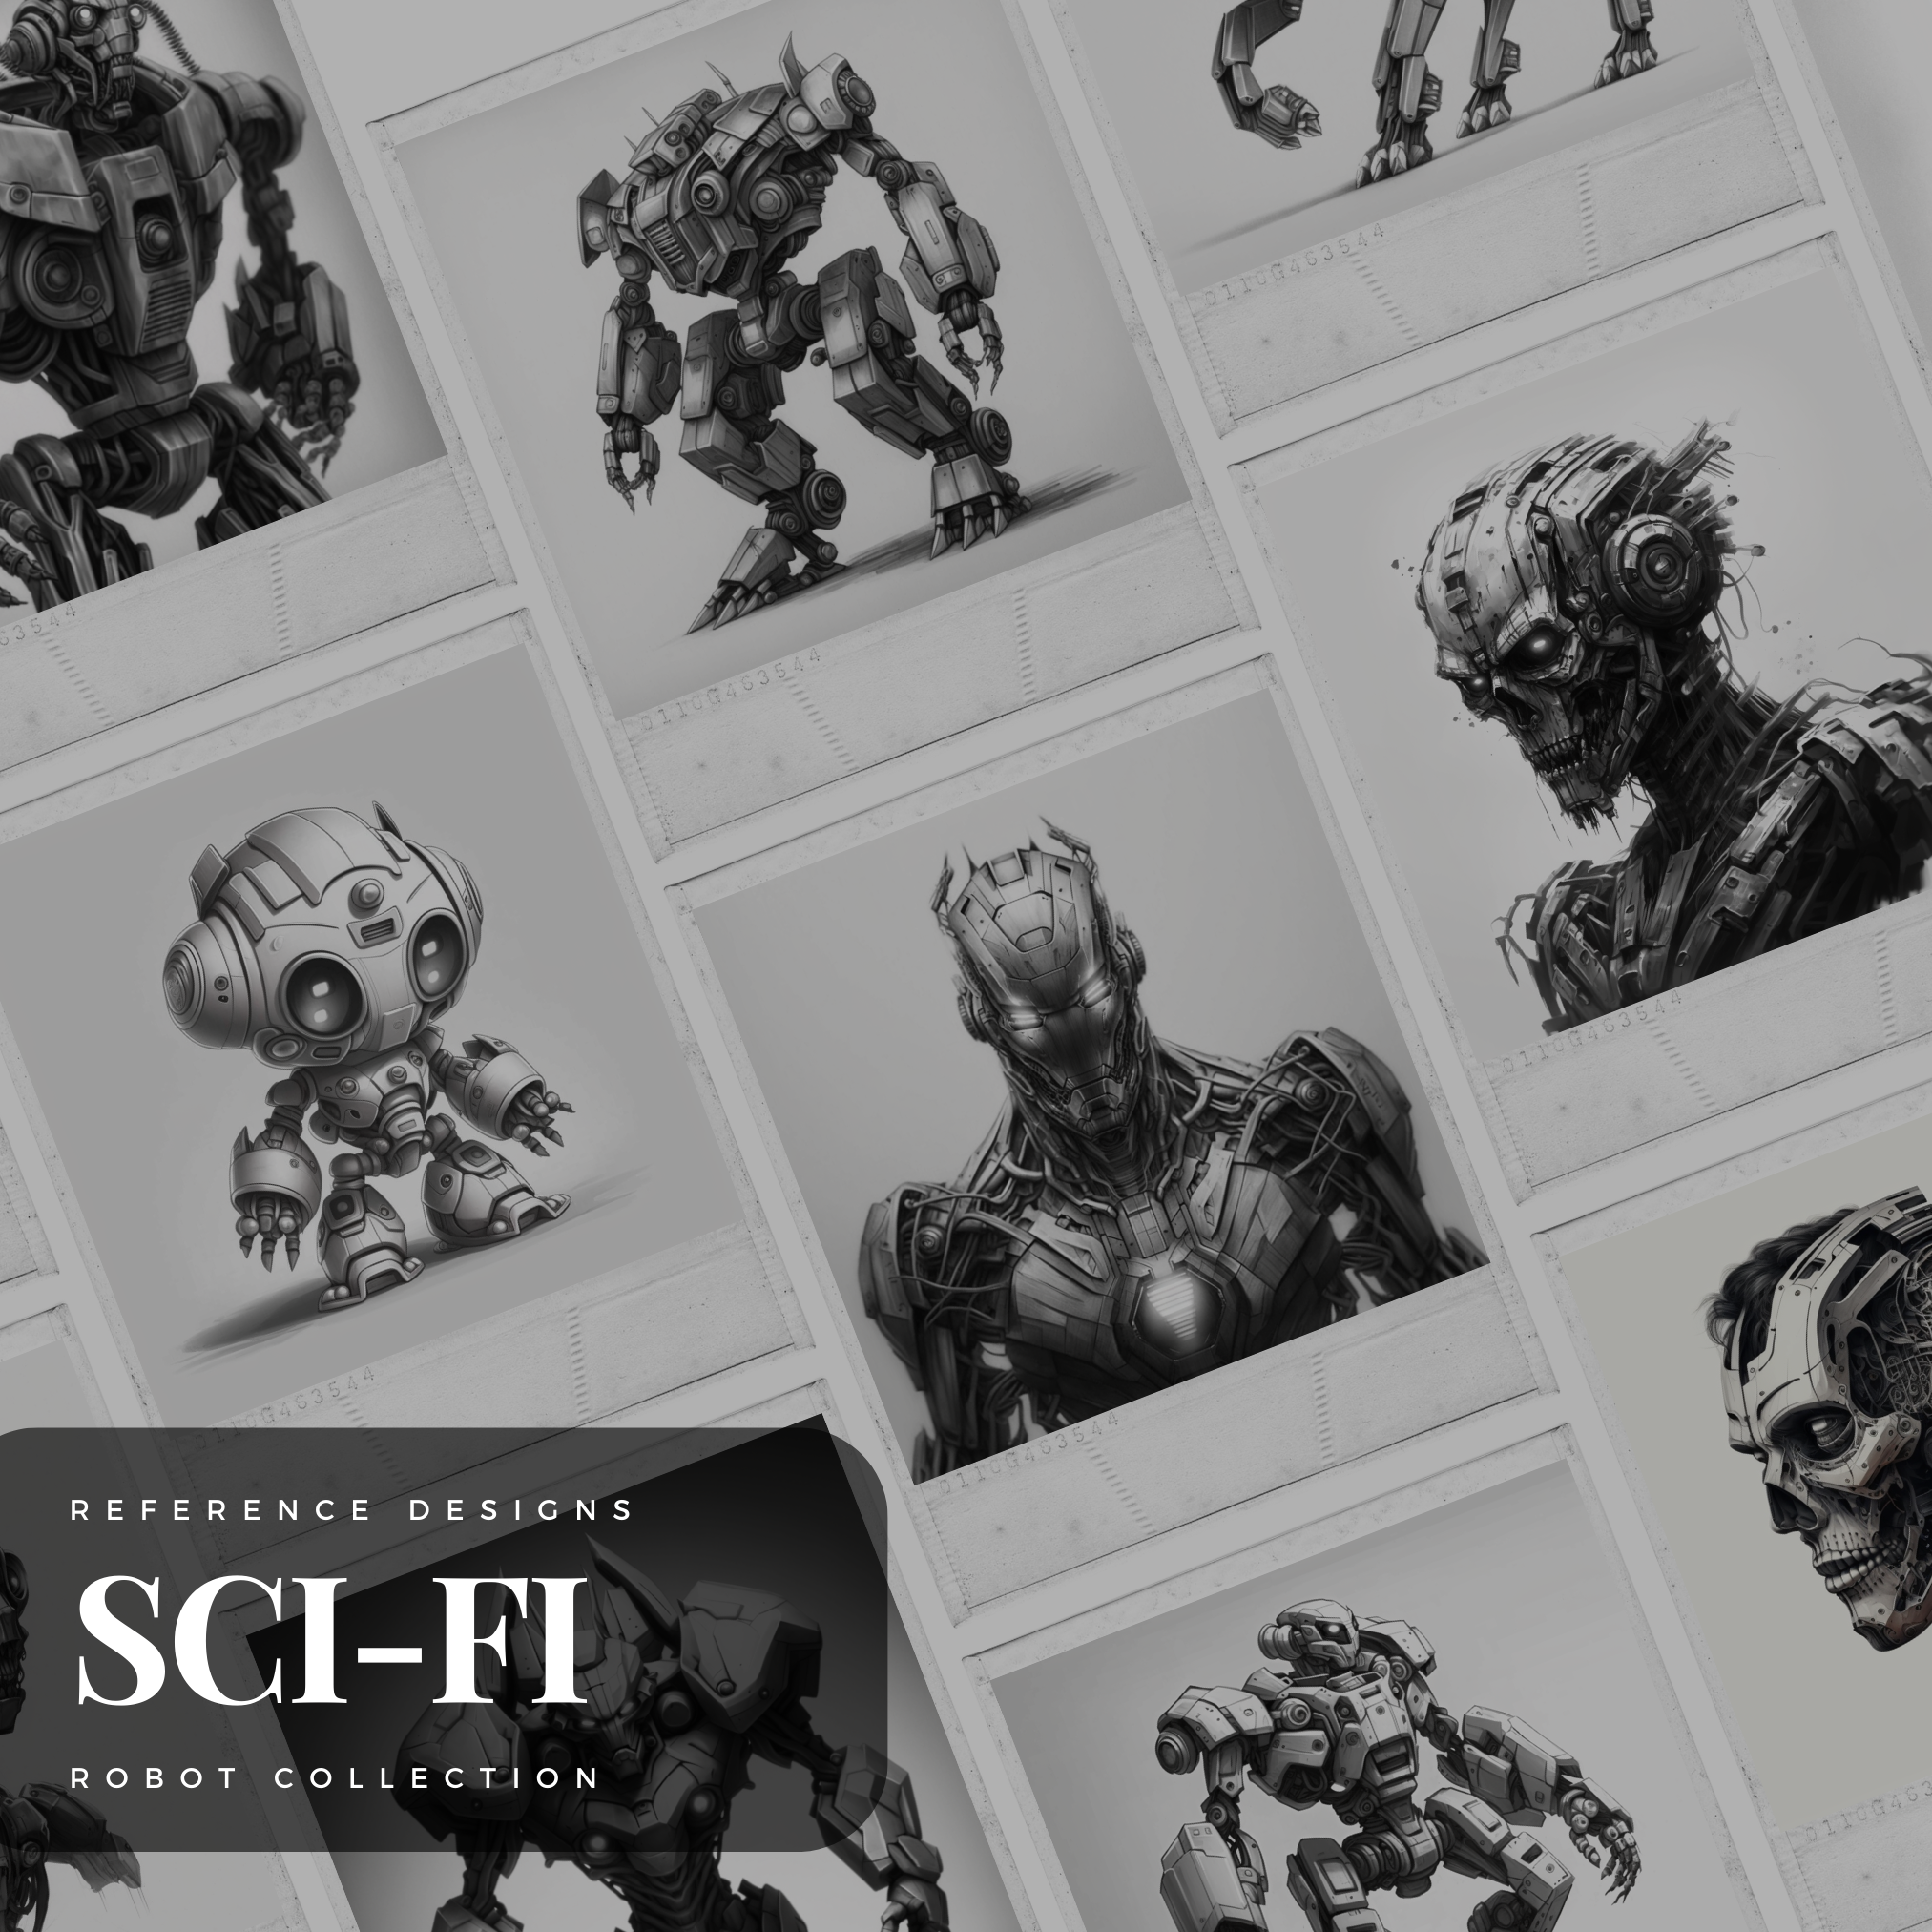 Robots Digital Sci-Fi Design Collection: 100 Procreate & Sketchbook Images